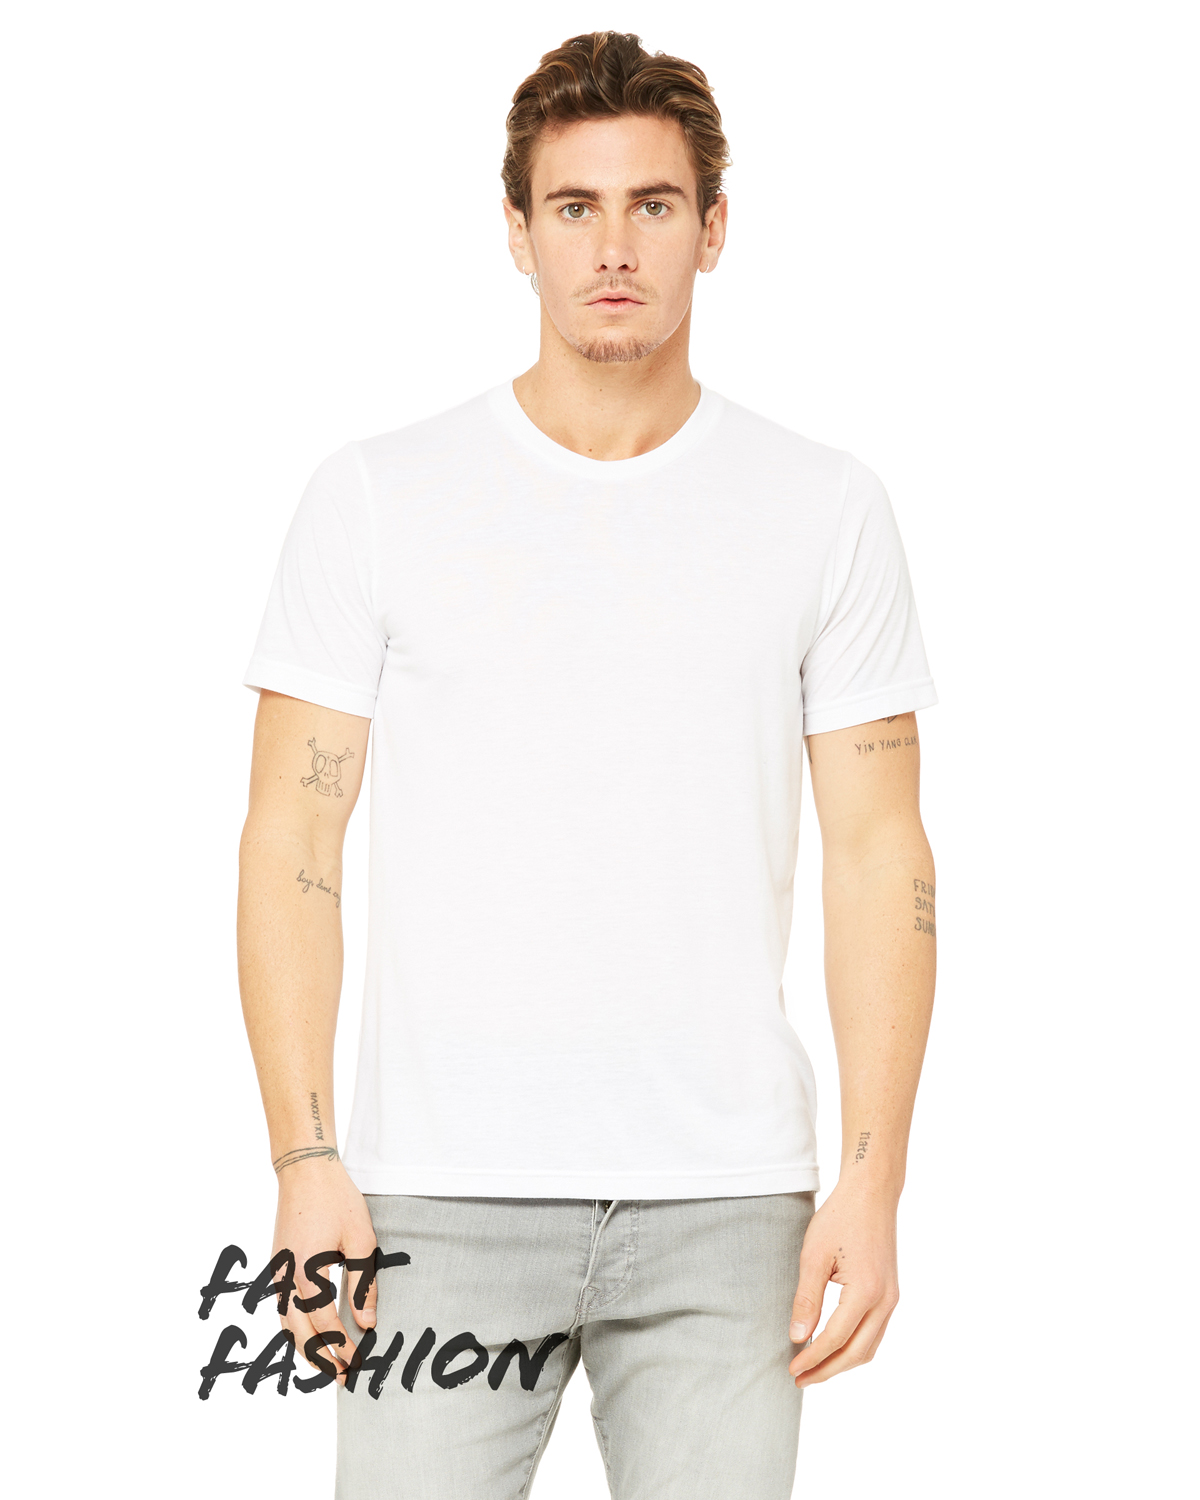 Bella Canvas 3880 Unisex Viscose Fashion T Shirt | Jiffy Shirts